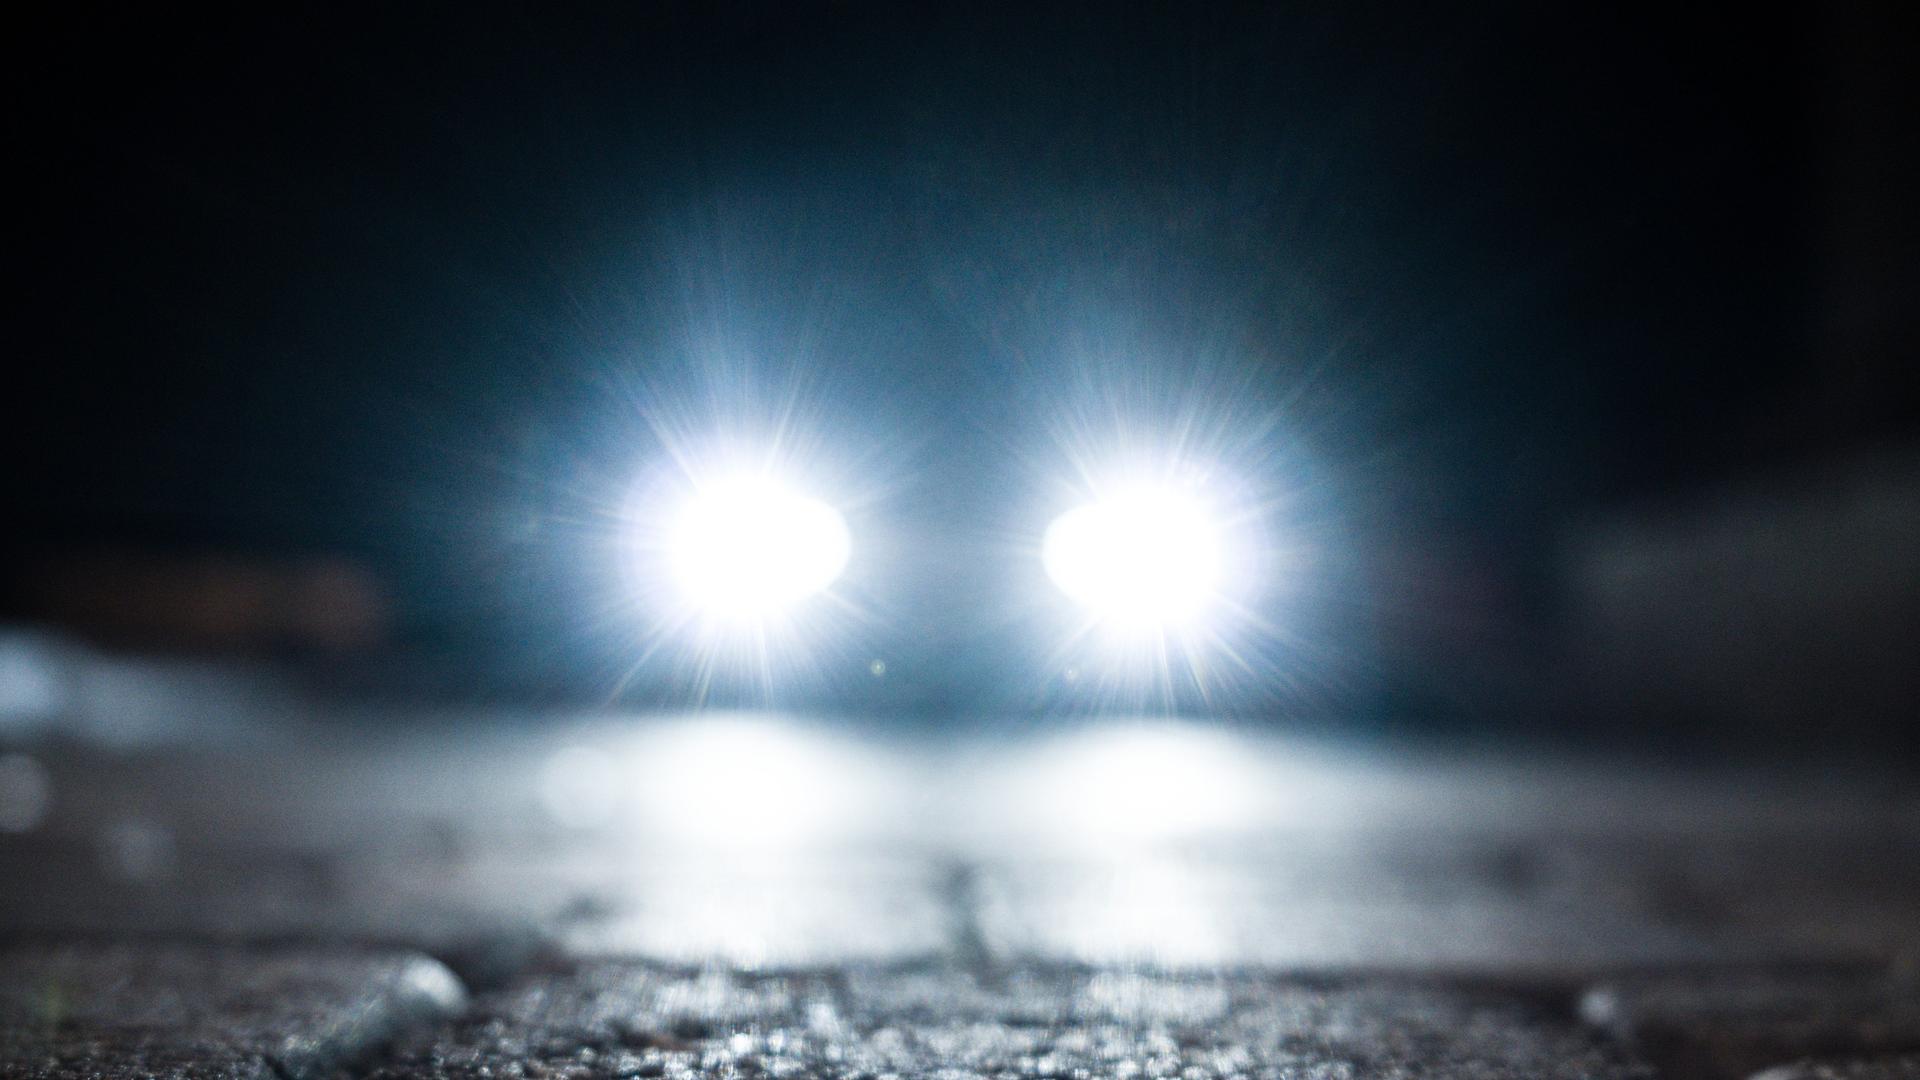 Kopfsteinpflaster in der Dunkelheit. Ein Auto nähert sich mit blendendgrellen Scheinwerfern.